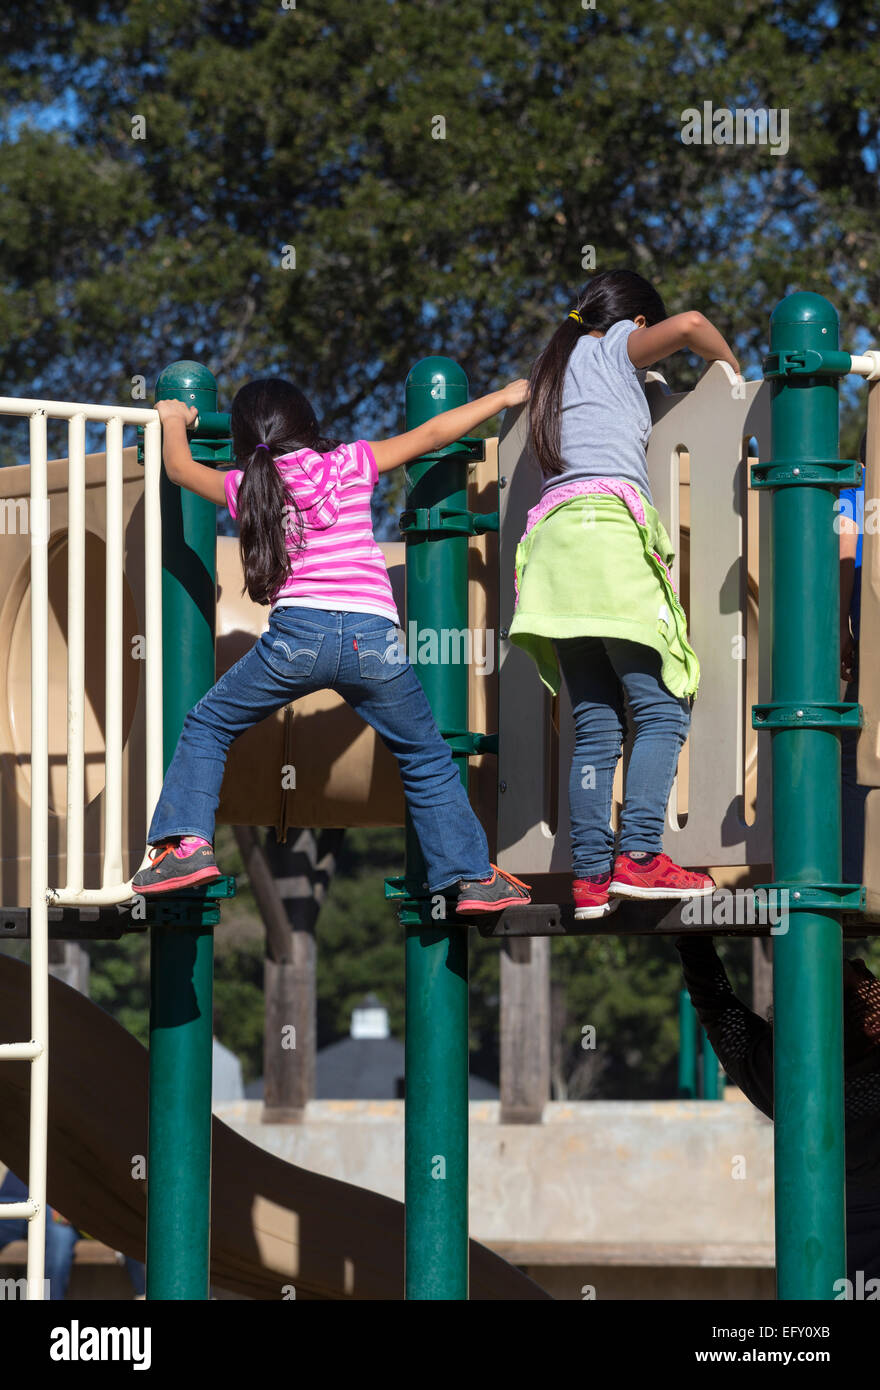 Hispanischen Mädchen, junge Mädchen, Mädchen, spielen, spielen, Spielplatz, Pioneer Park, Novato, Kalifornien, USA, Nordamerika Stockfoto